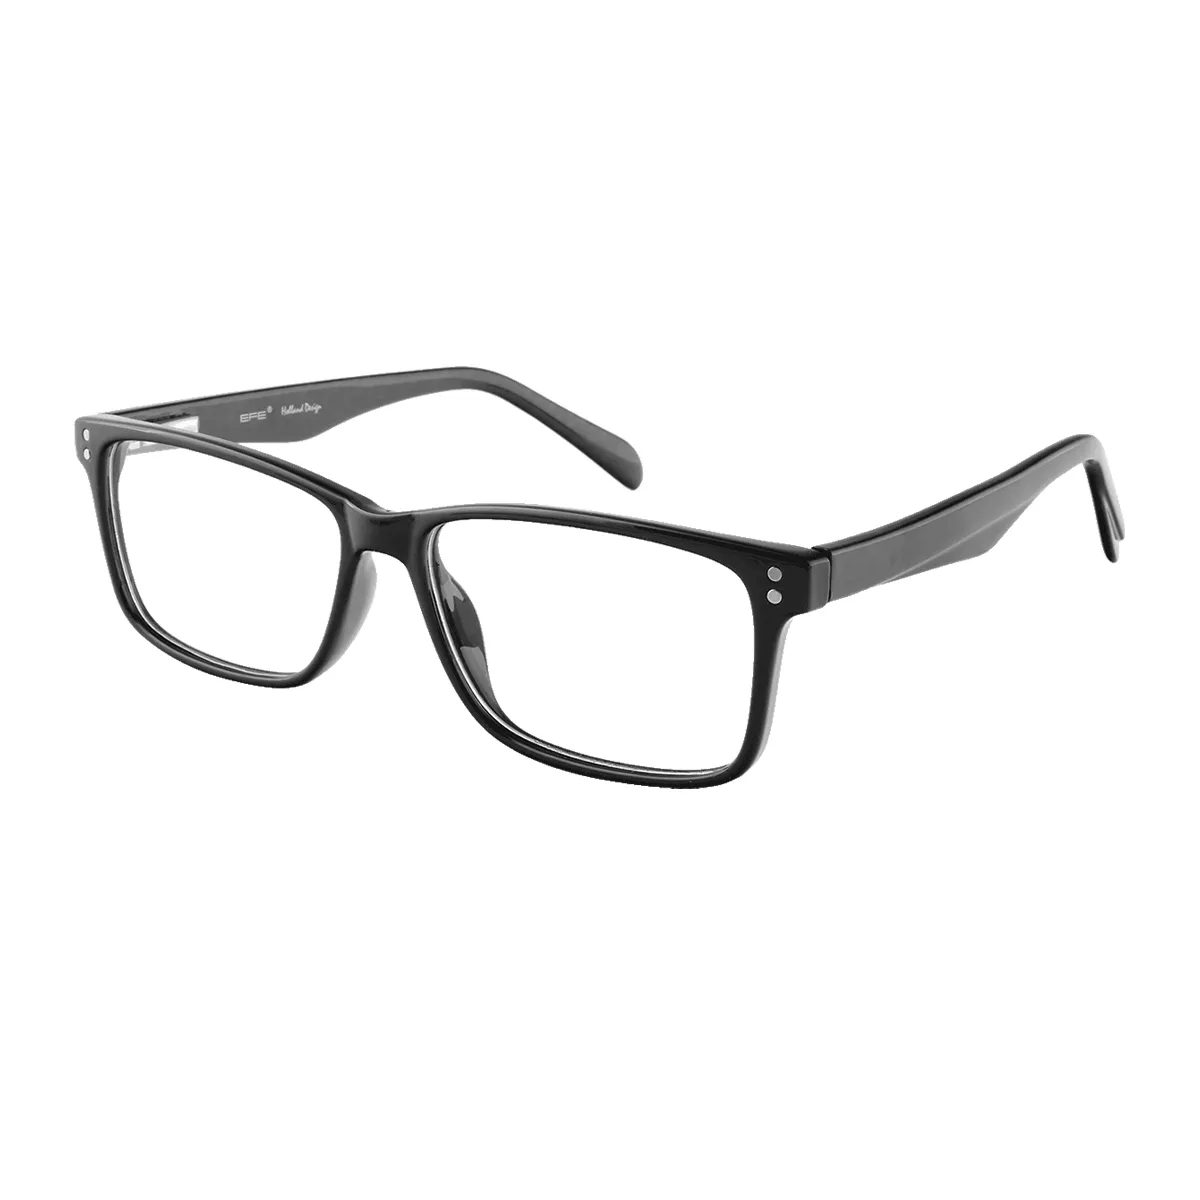 Nadine - Rectangle Black Glasses for Men & Women